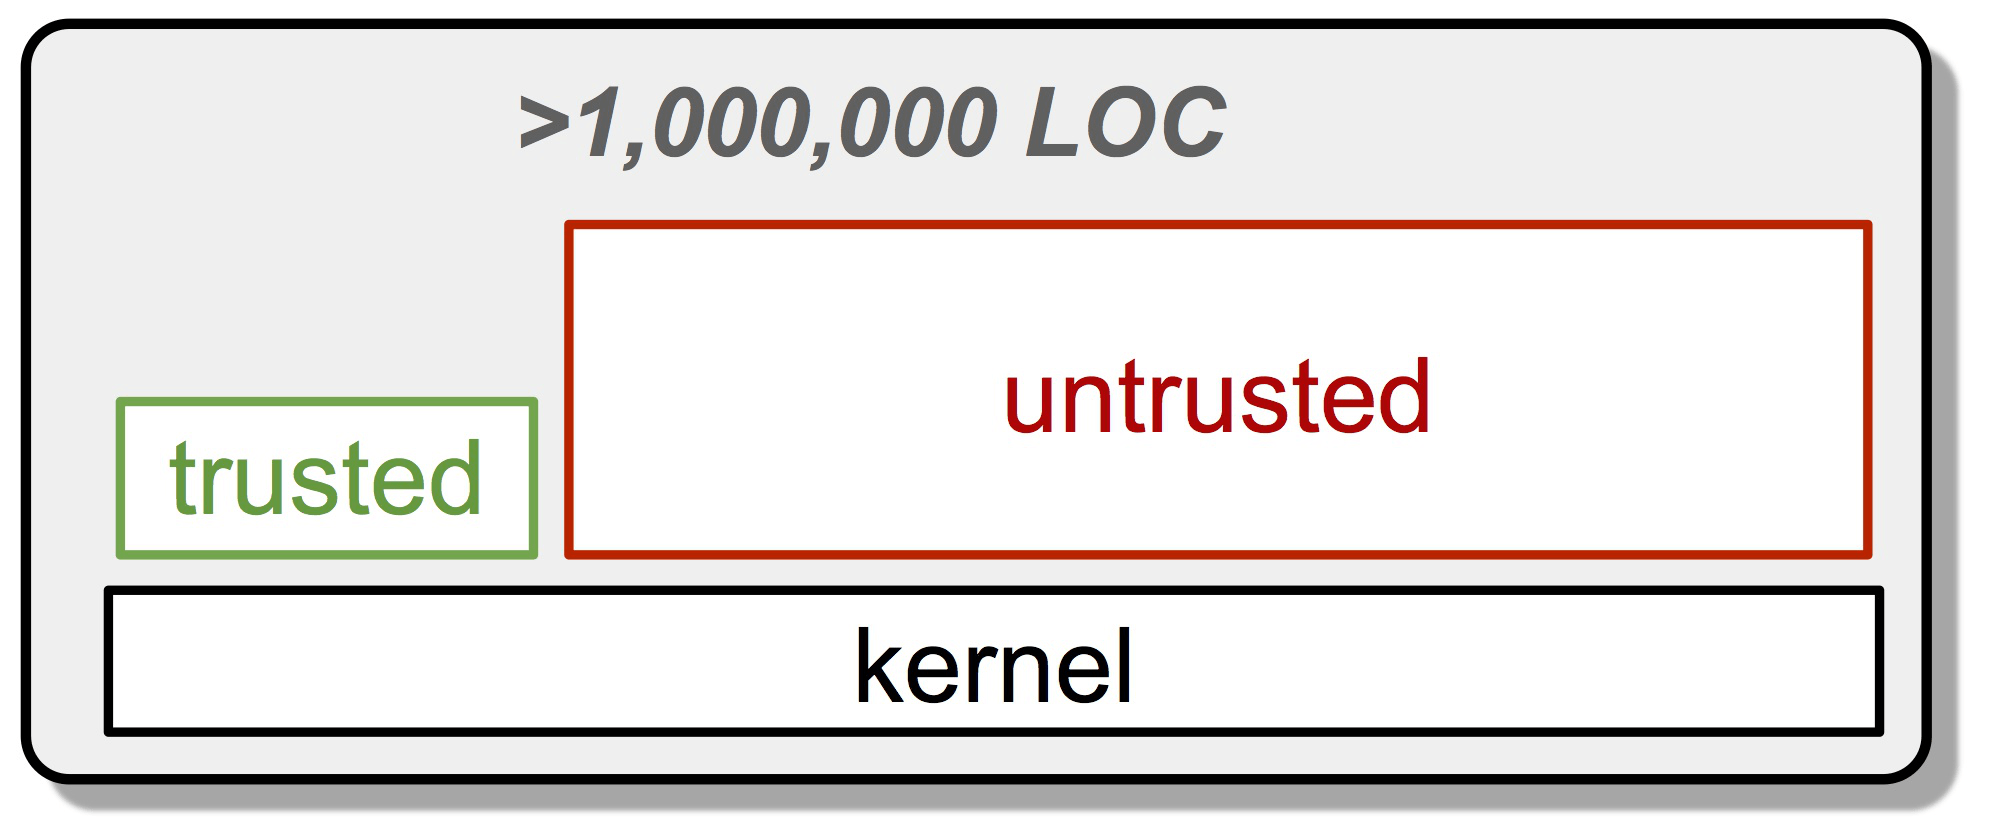 Kernel-based, componentised system